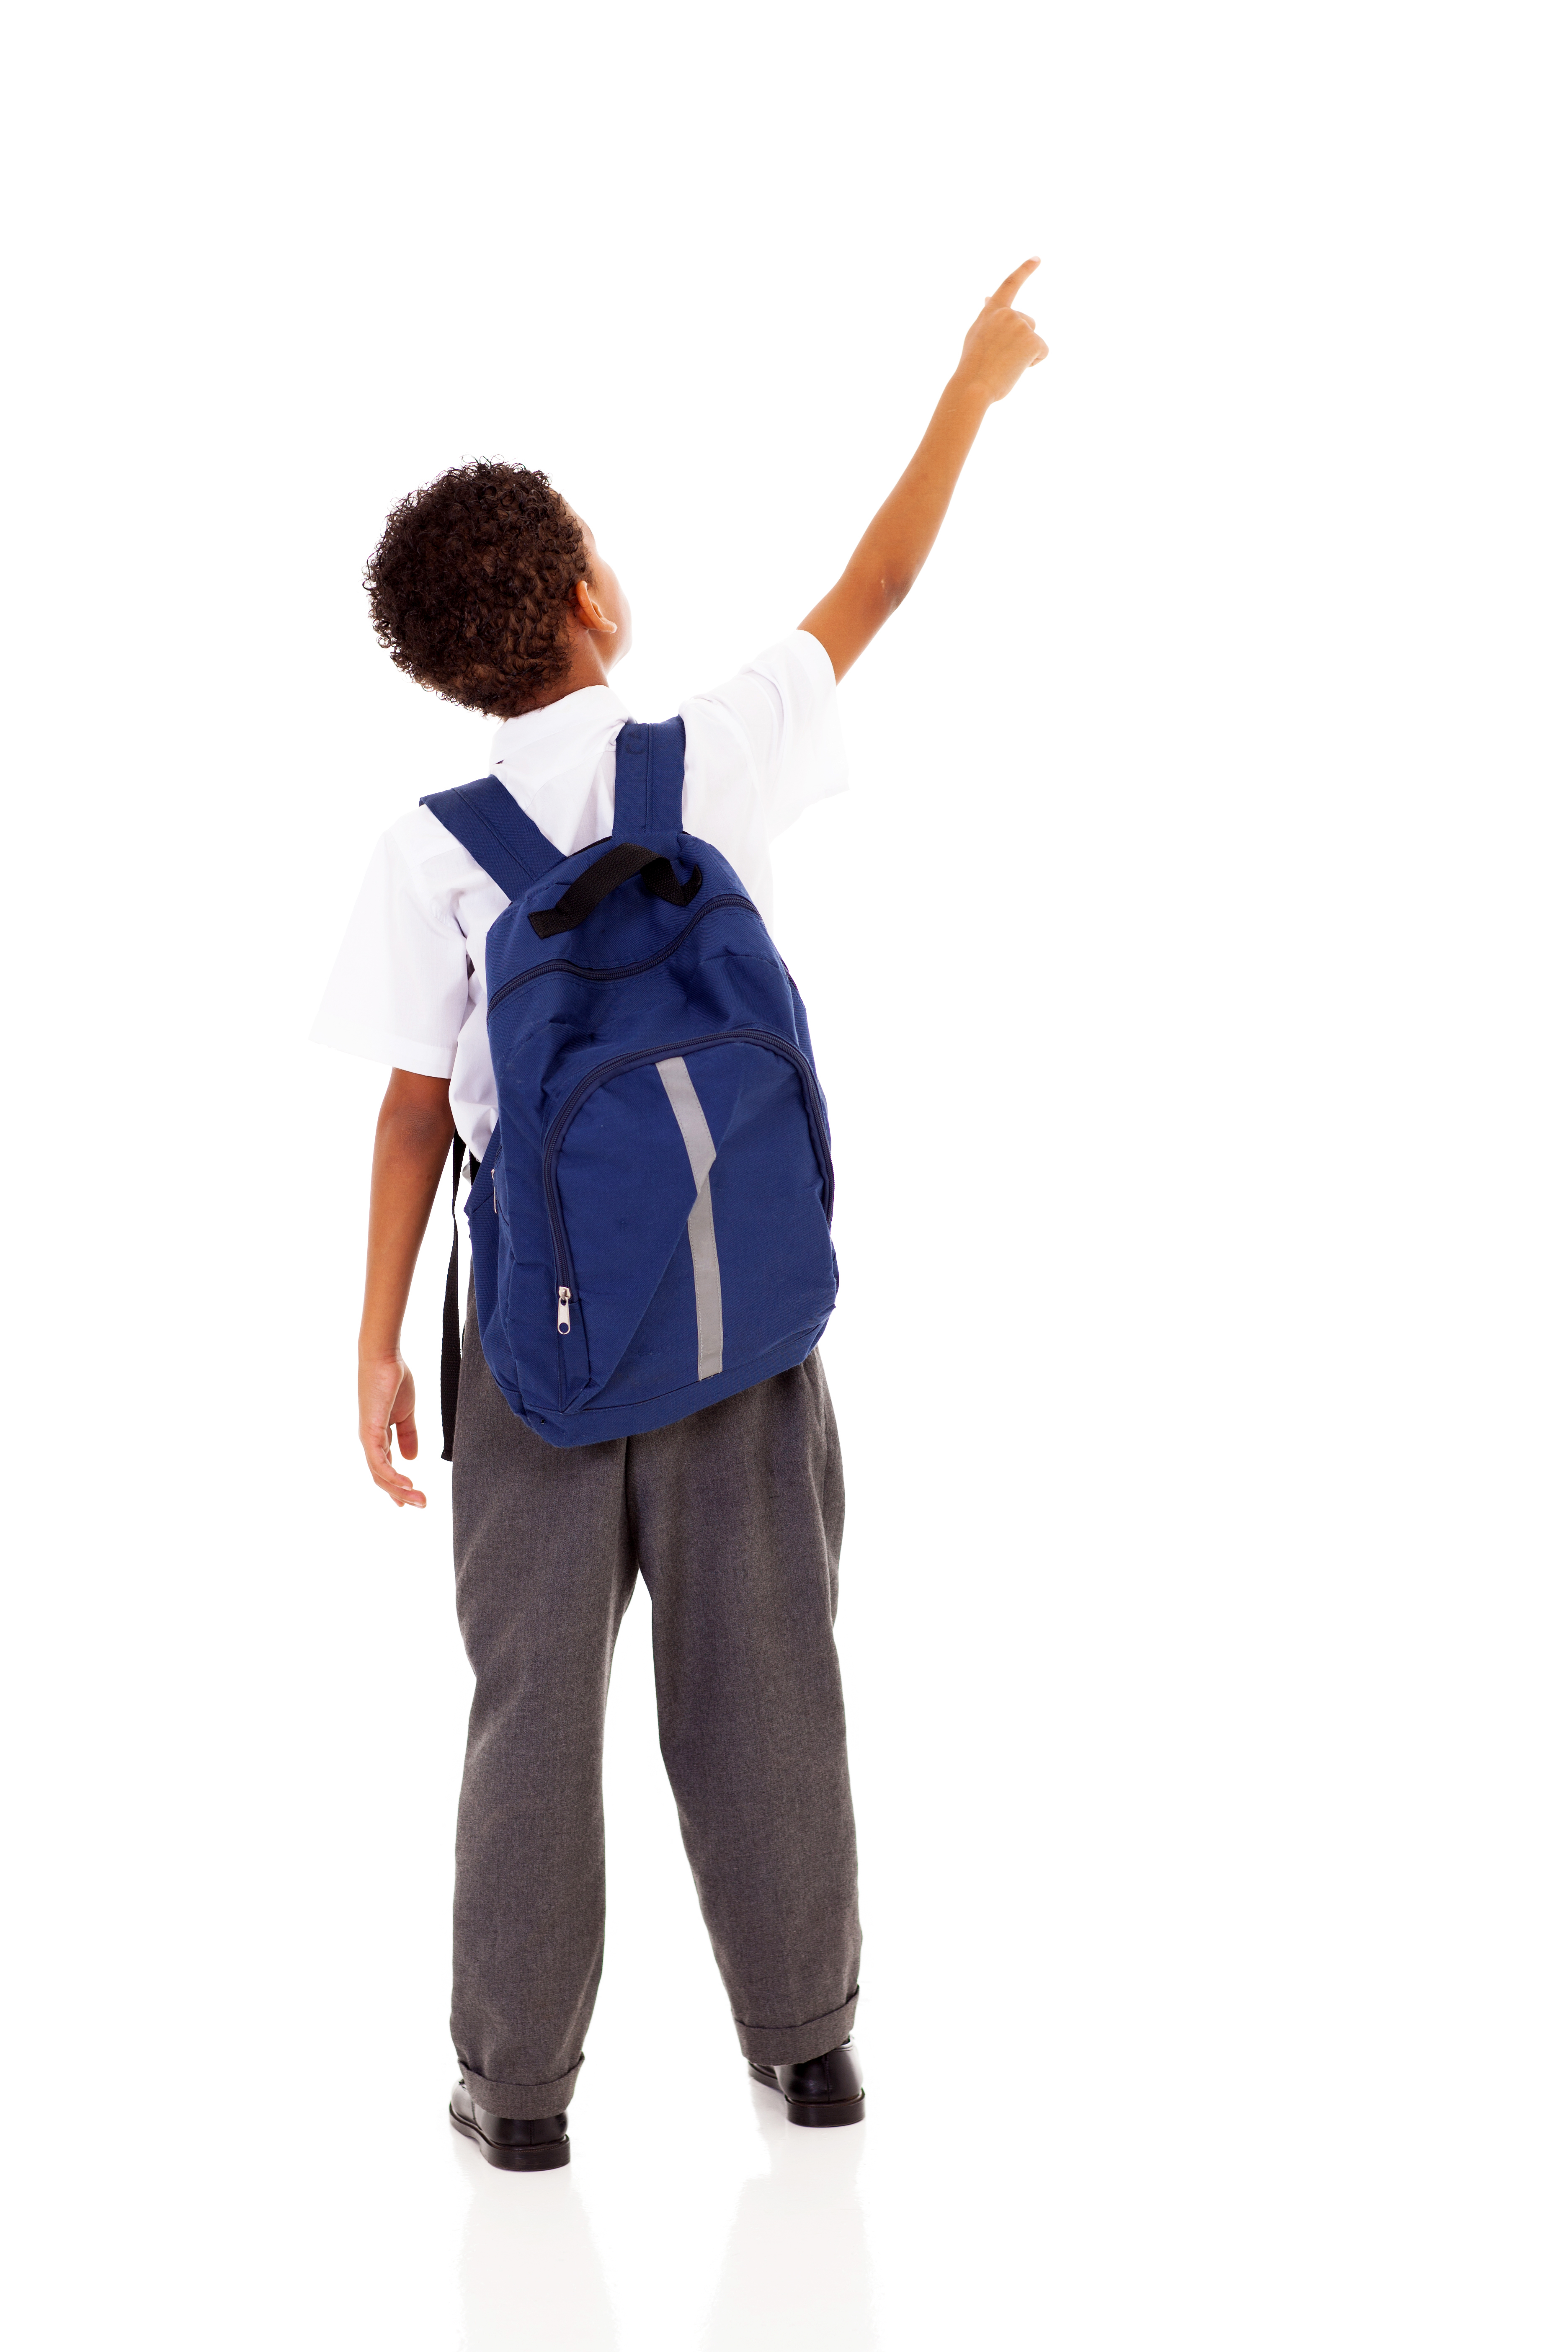 La imagen muestra a un niño de espaldas indicando un lugar